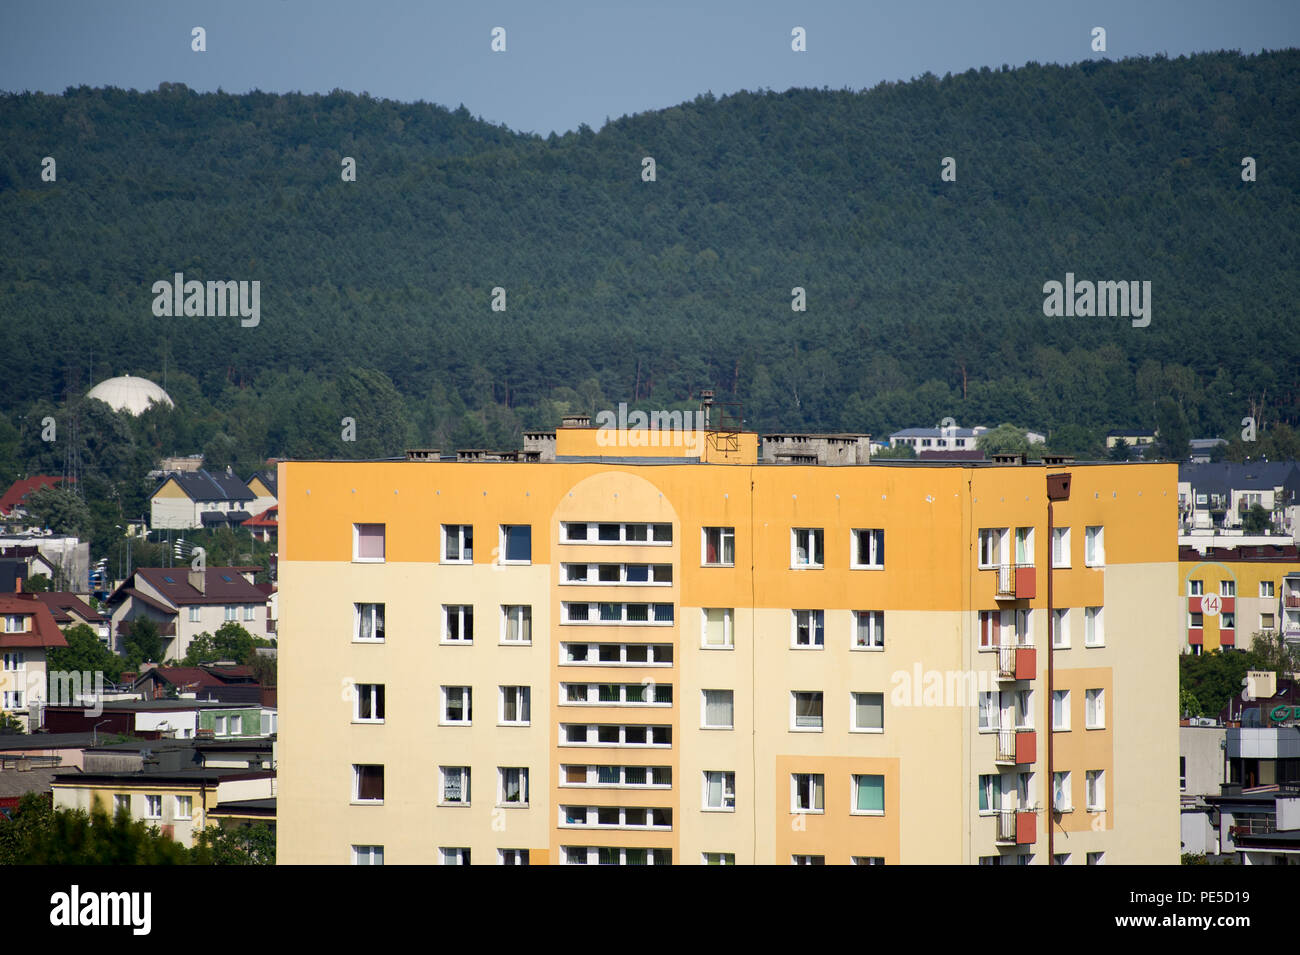 Kommunistischen Ära Apartment Gebäude in Rumia, Polen. August 2018 © wojciech Strozyk/Alamy Stock Foto Stockfoto